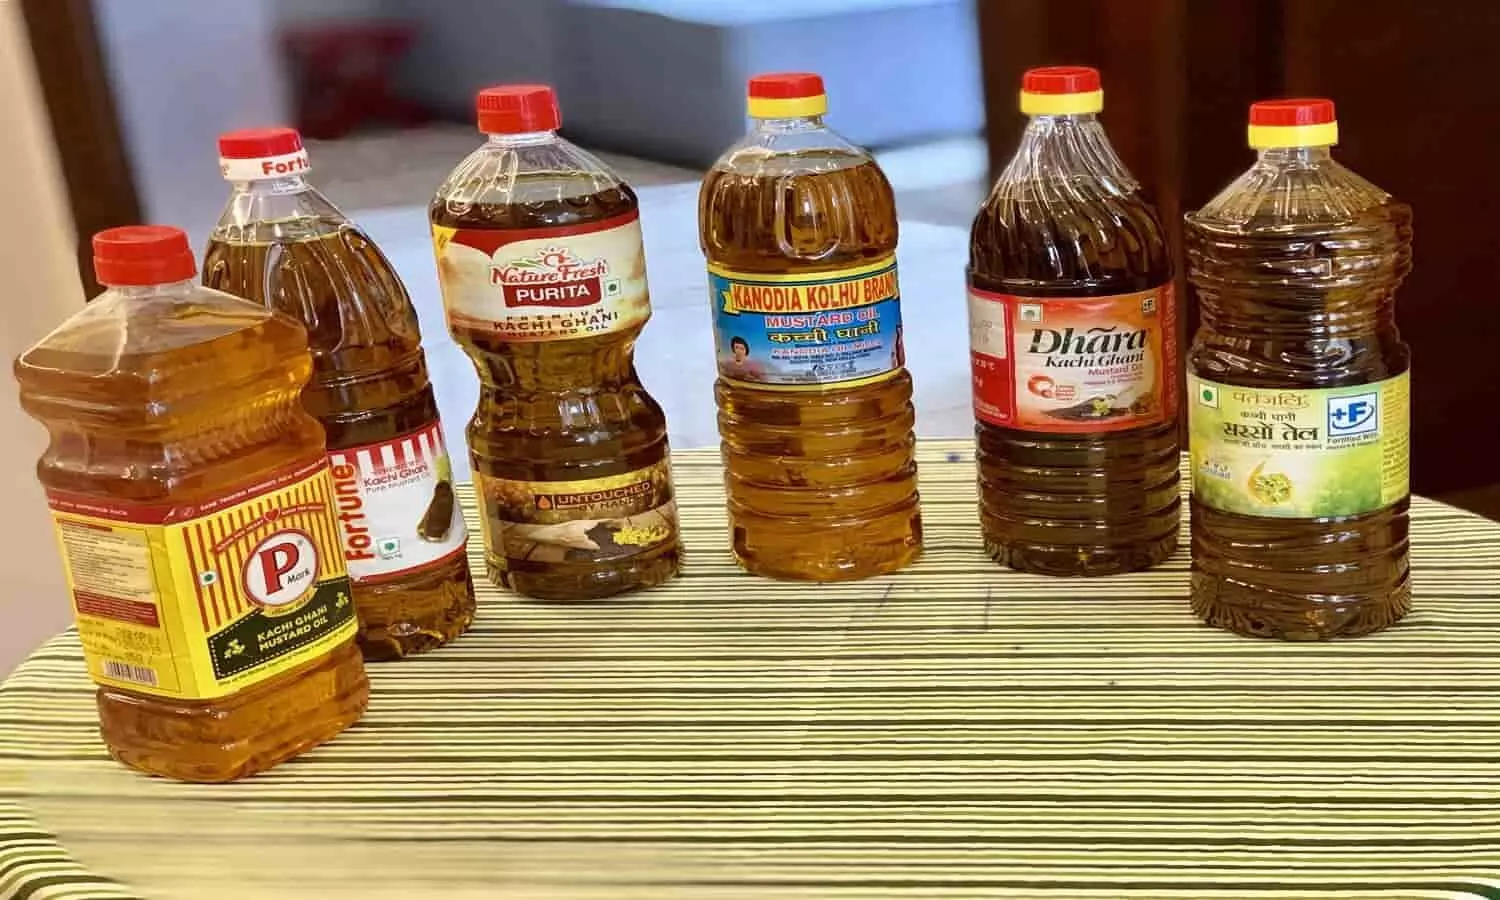 Mustard oil prices: खुशखबरी! सरसों का तेल अब सिर्फ 50 रुपये में मिलेगा 2 लीटर